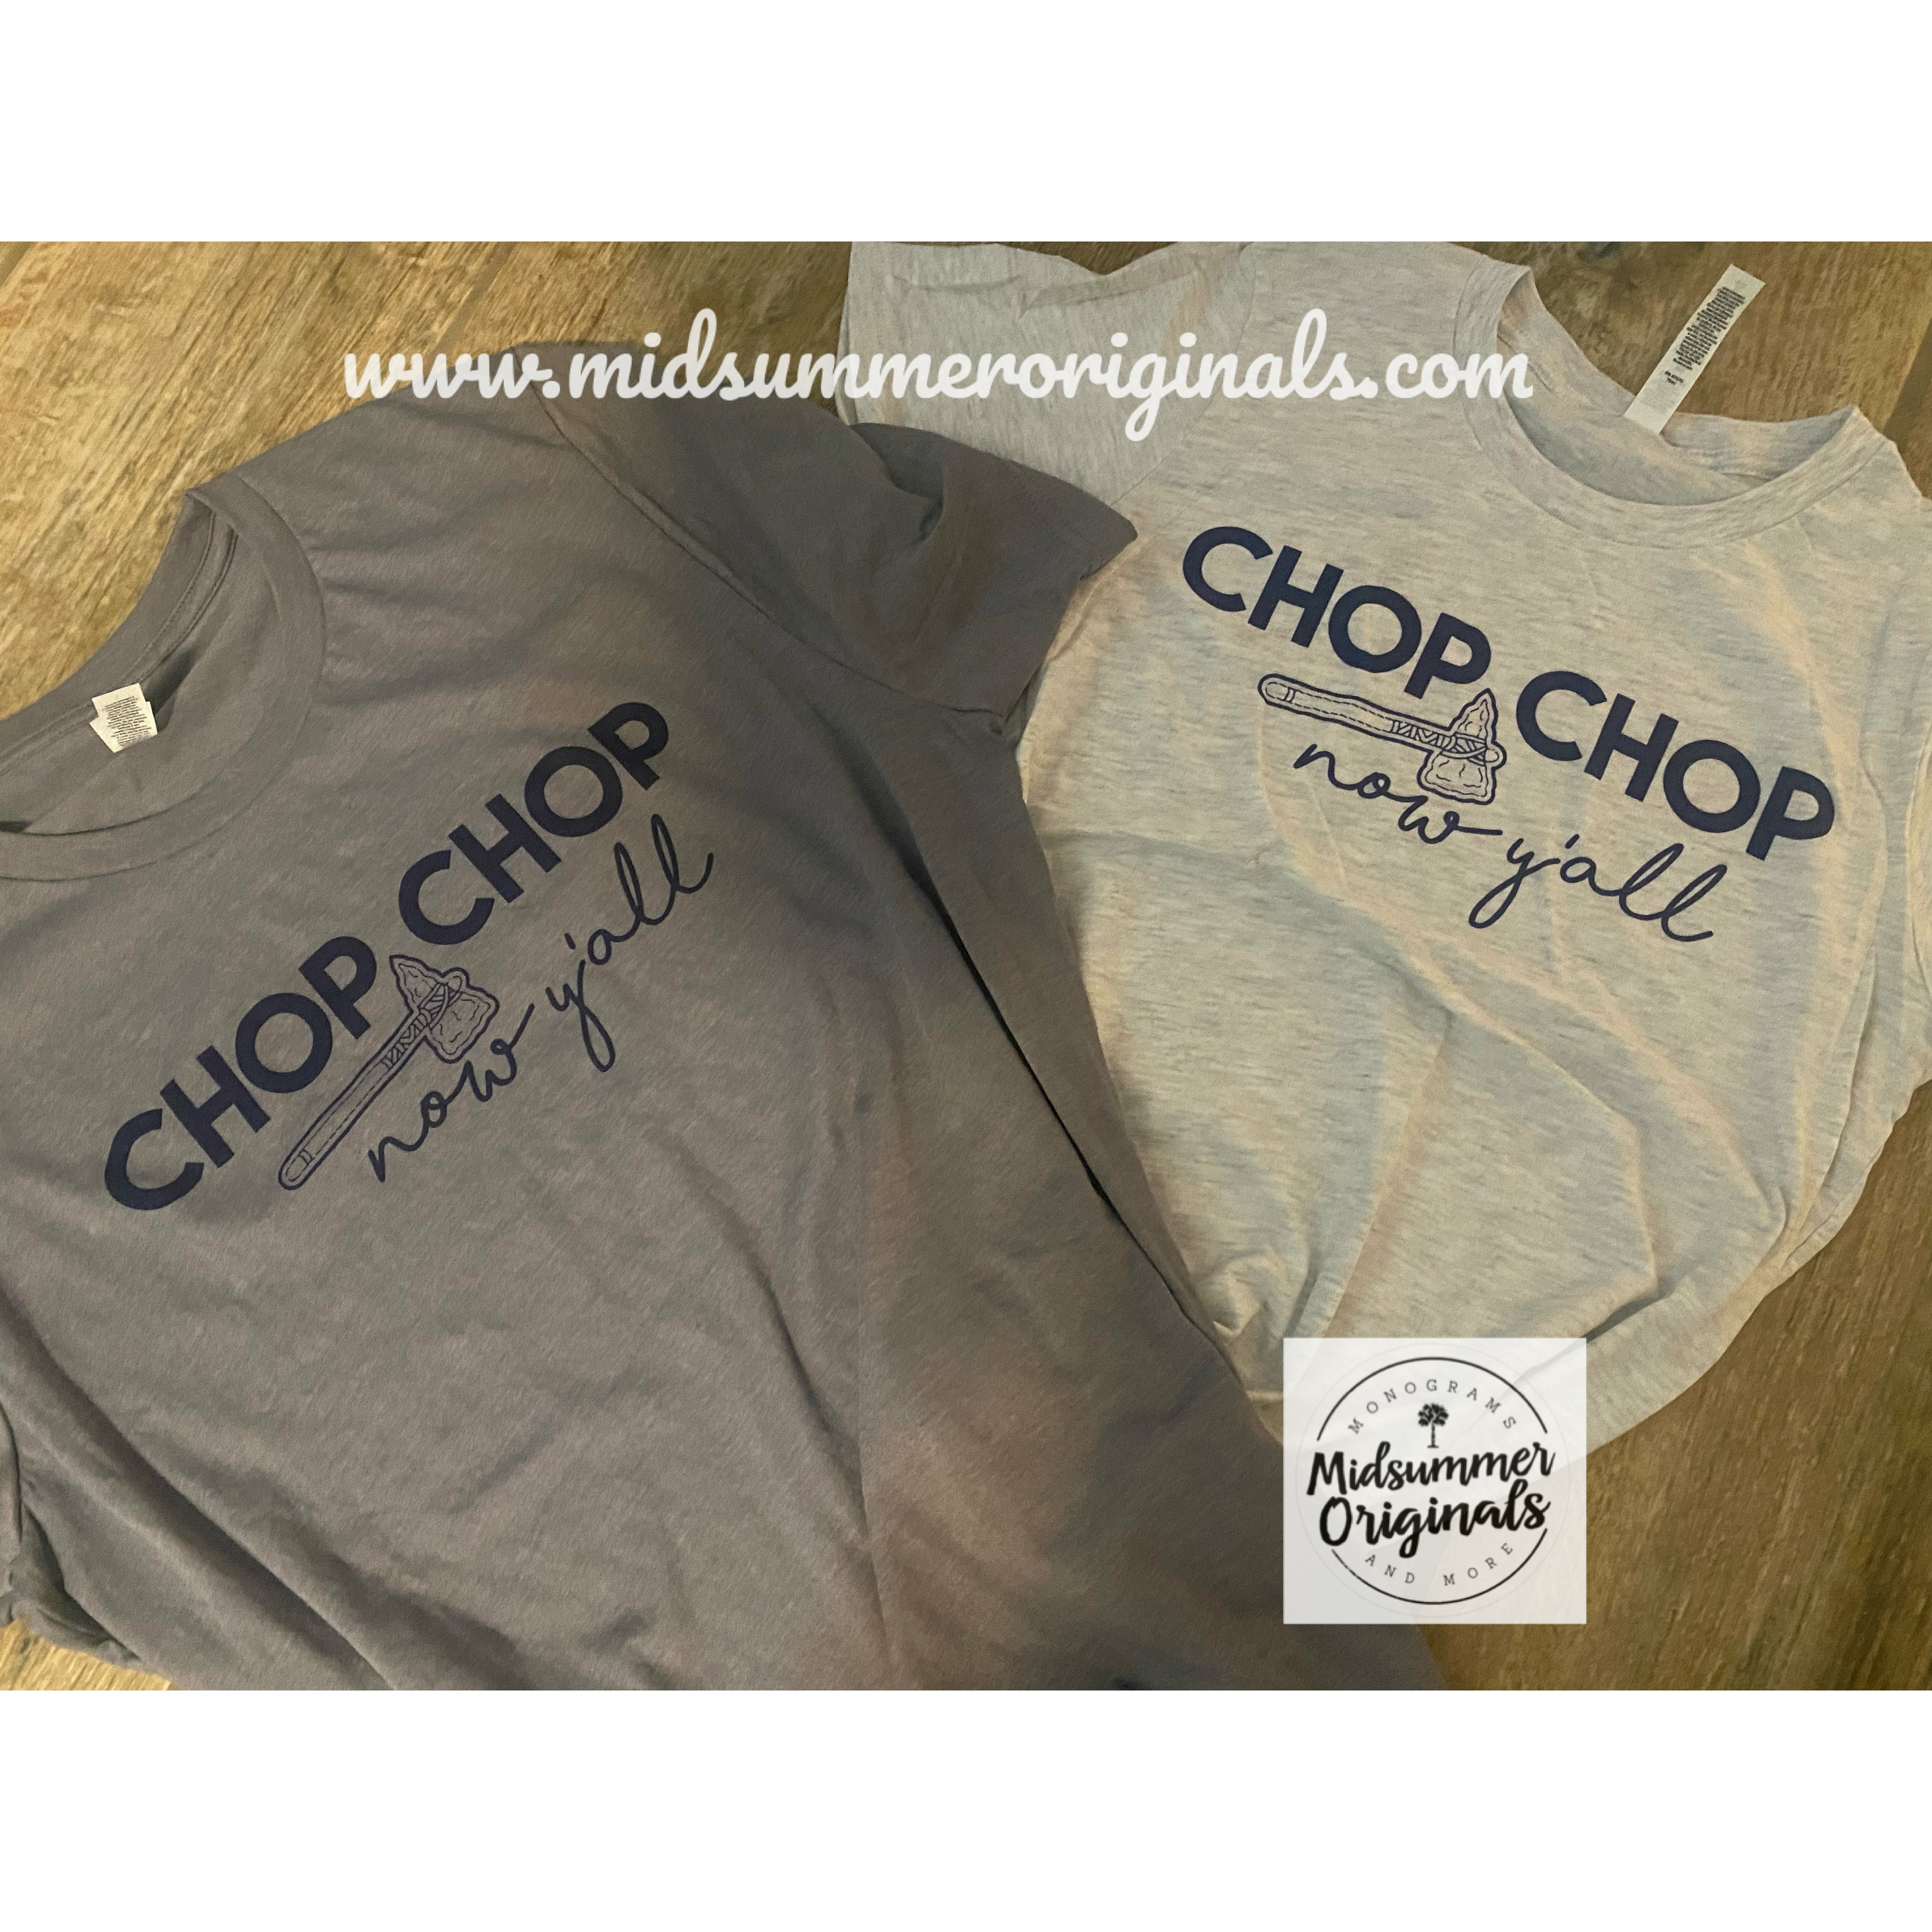 Chop Chop Y’all